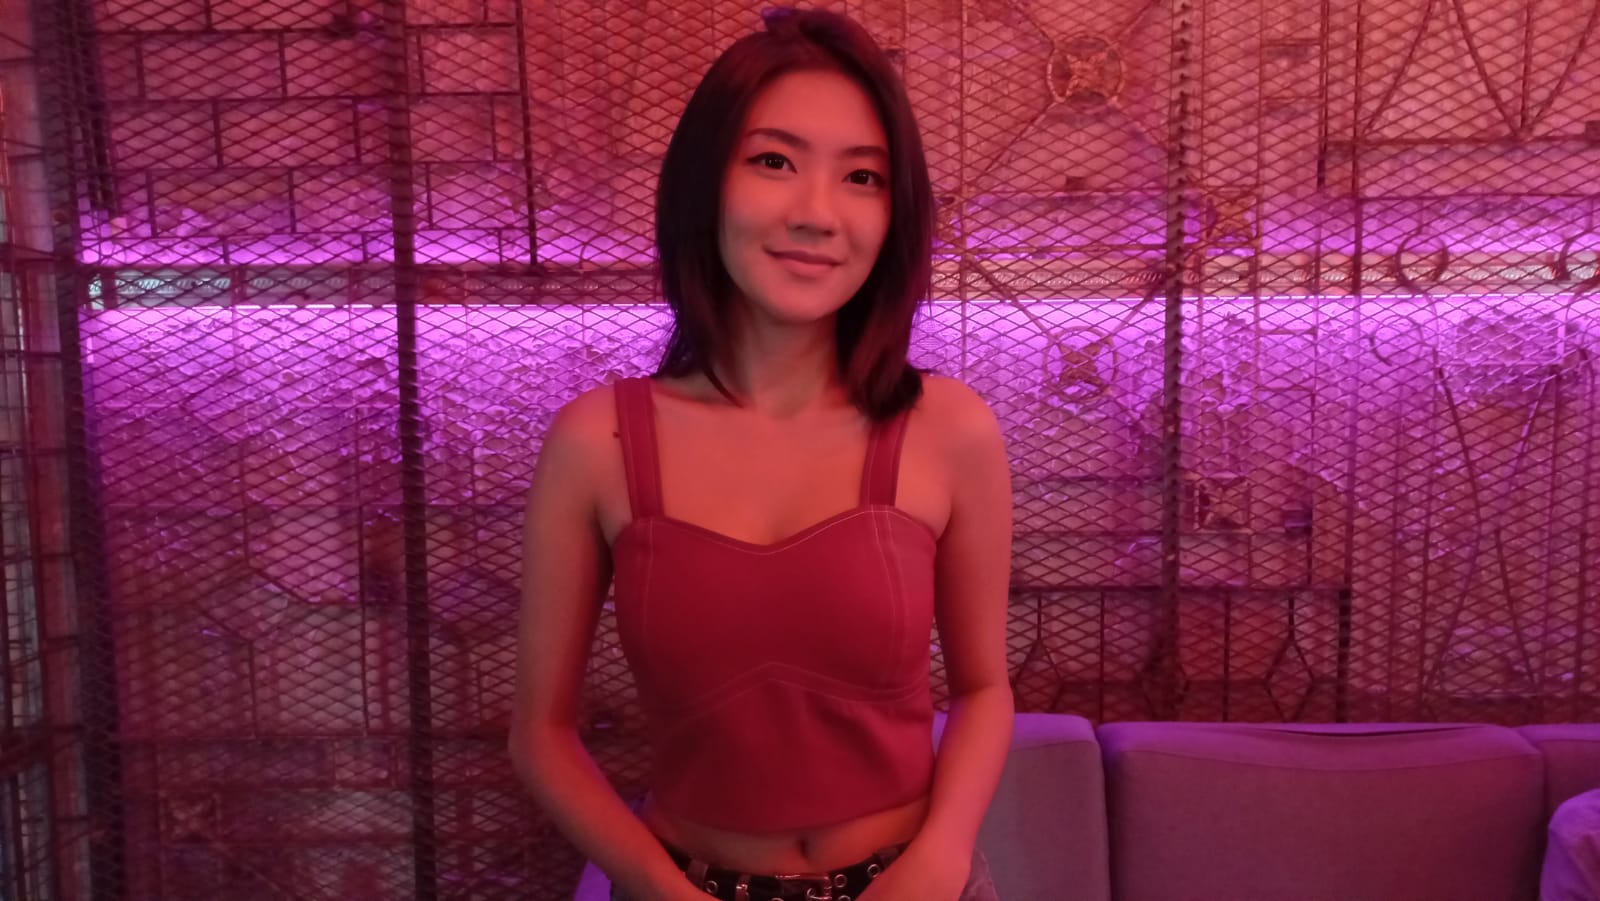 Ikut Andil di Ajang Pro Gamers City, Rachel Chia Akan Menjadi Player Mobile Legend